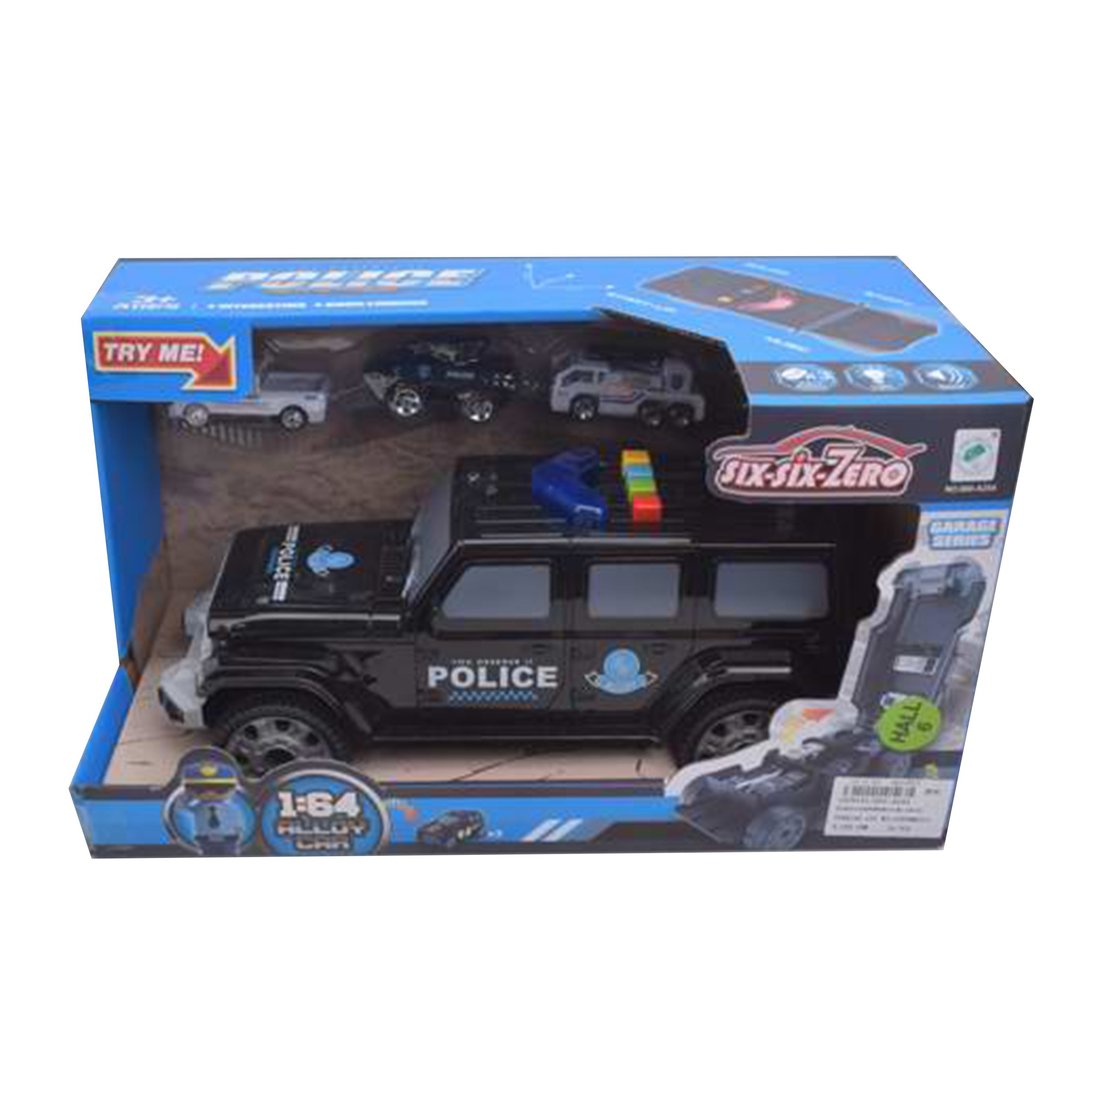 Игр.набор Полиция, свет, звук, в комплекте: машина, машина металл. 3шт., фигурка, тестовые эл.пит.АG13*3шт.вх.в комплект, коробка